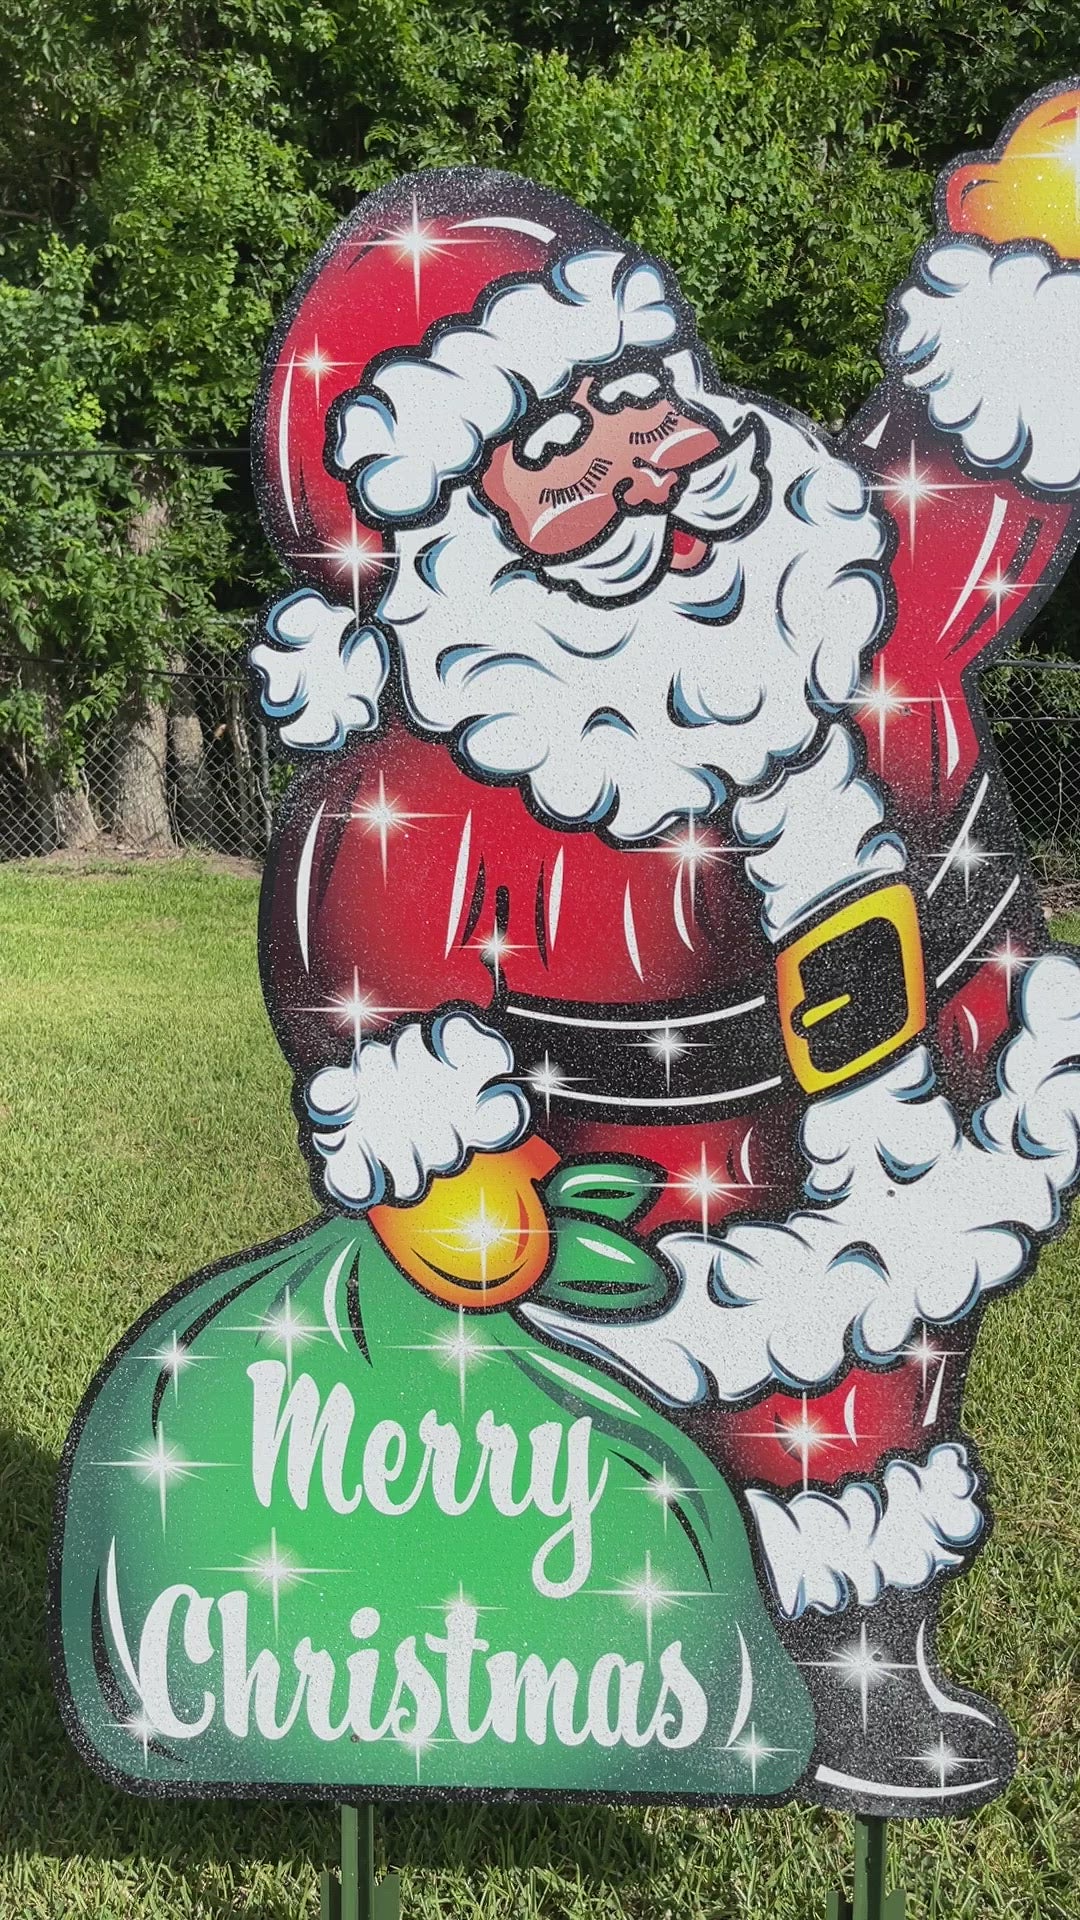 Santa Waving with a green bag